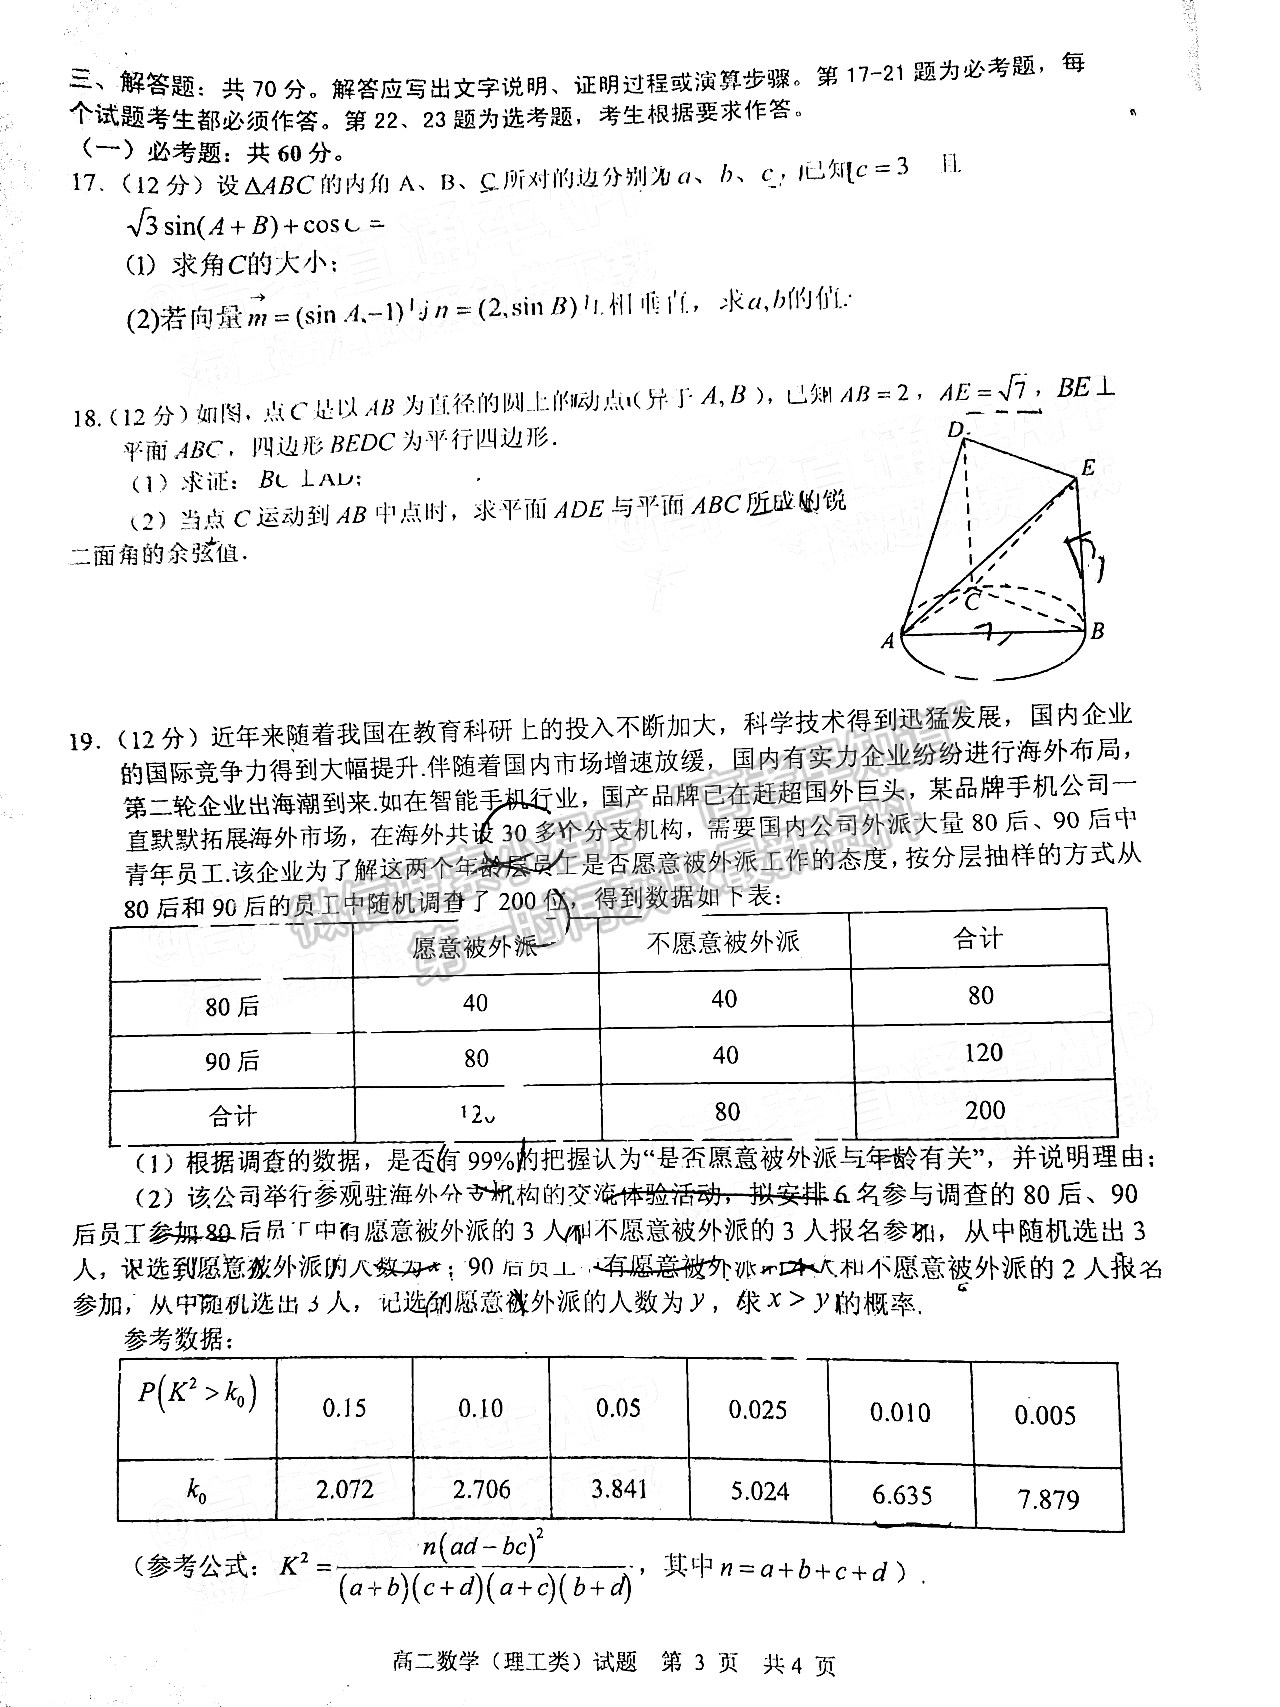 2023四川省广安市高2022年春季高2022级“零诊”考试理科数学试题及答案